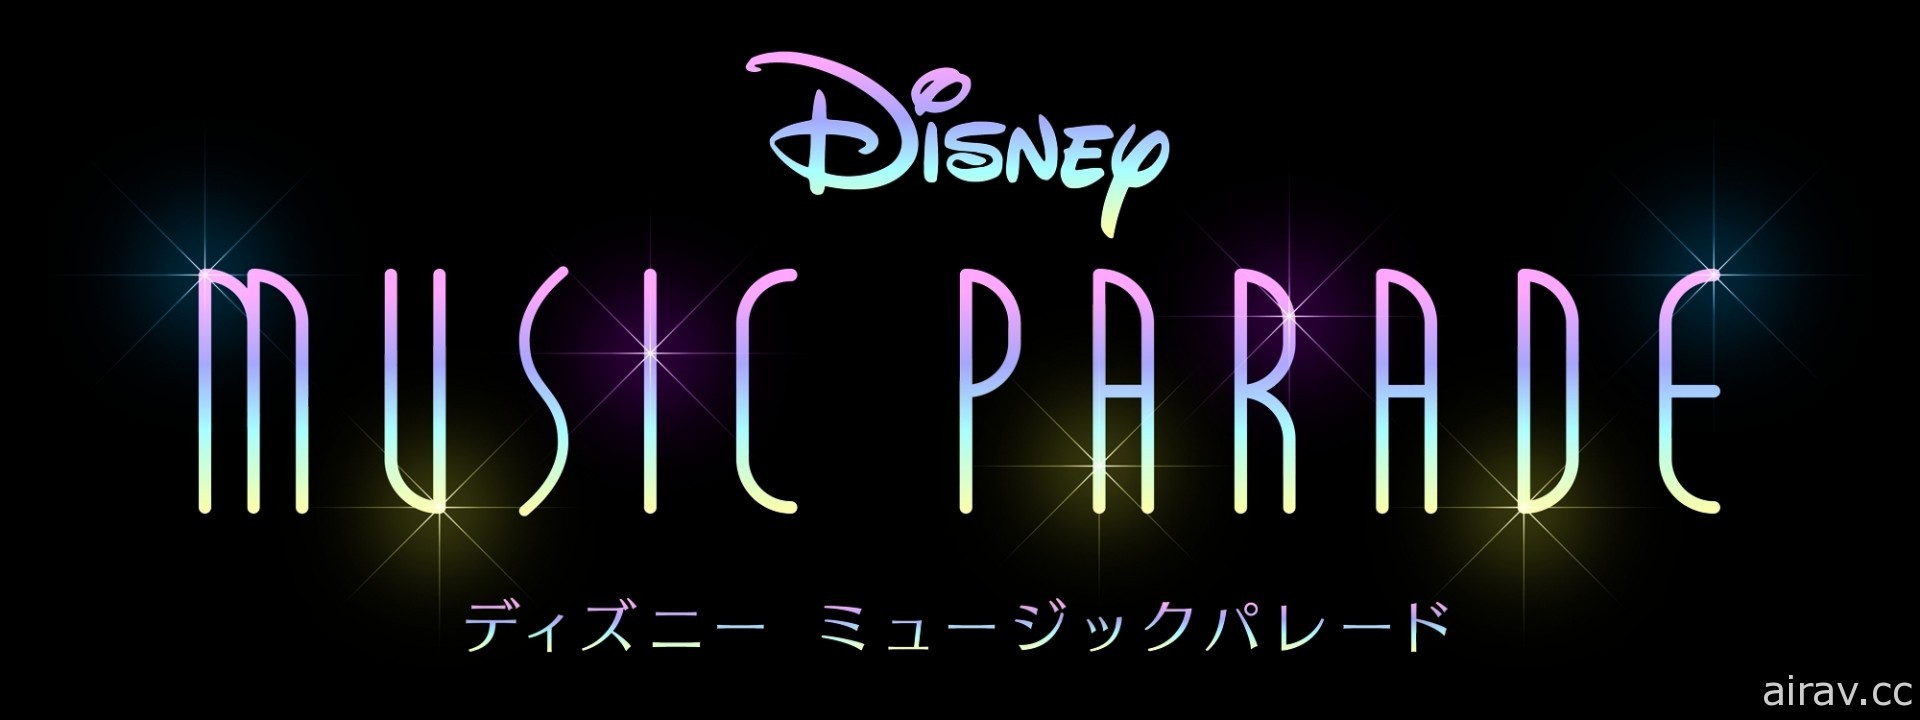 《迪士尼 音樂遊行》宣布 1 月 22 日在日本推出 公開新實機影片